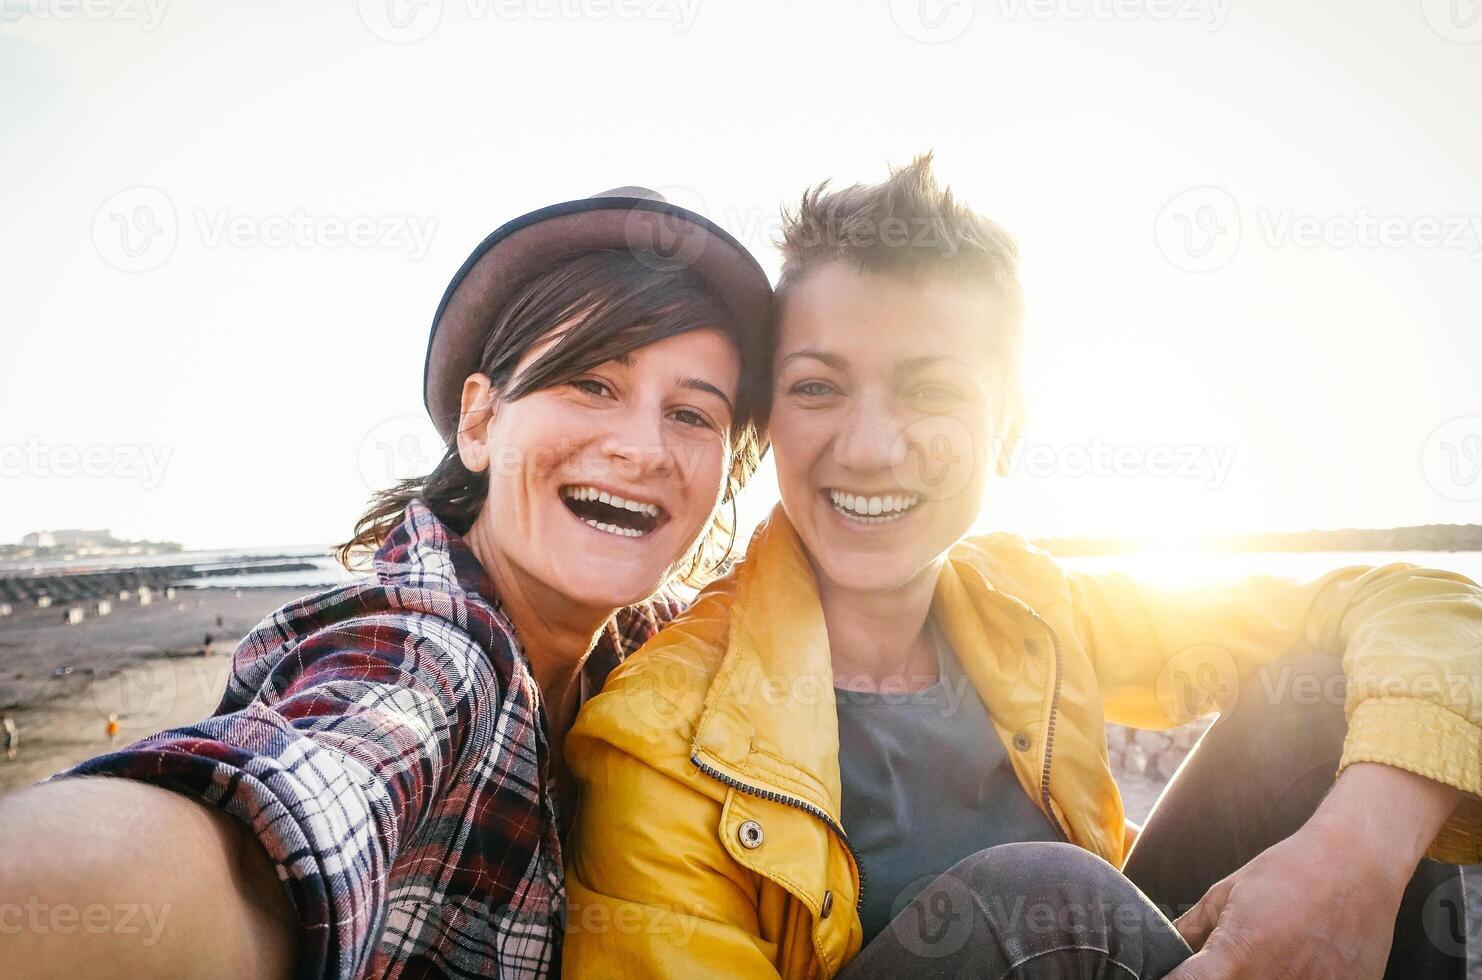 contento gay Pareja tomando selfie en el playa a puesta de sol - joven lesbianas teniendo divertido Fechado primero hora - lesbianas, homosexualidad amor y relación estilo de vida concepto foto